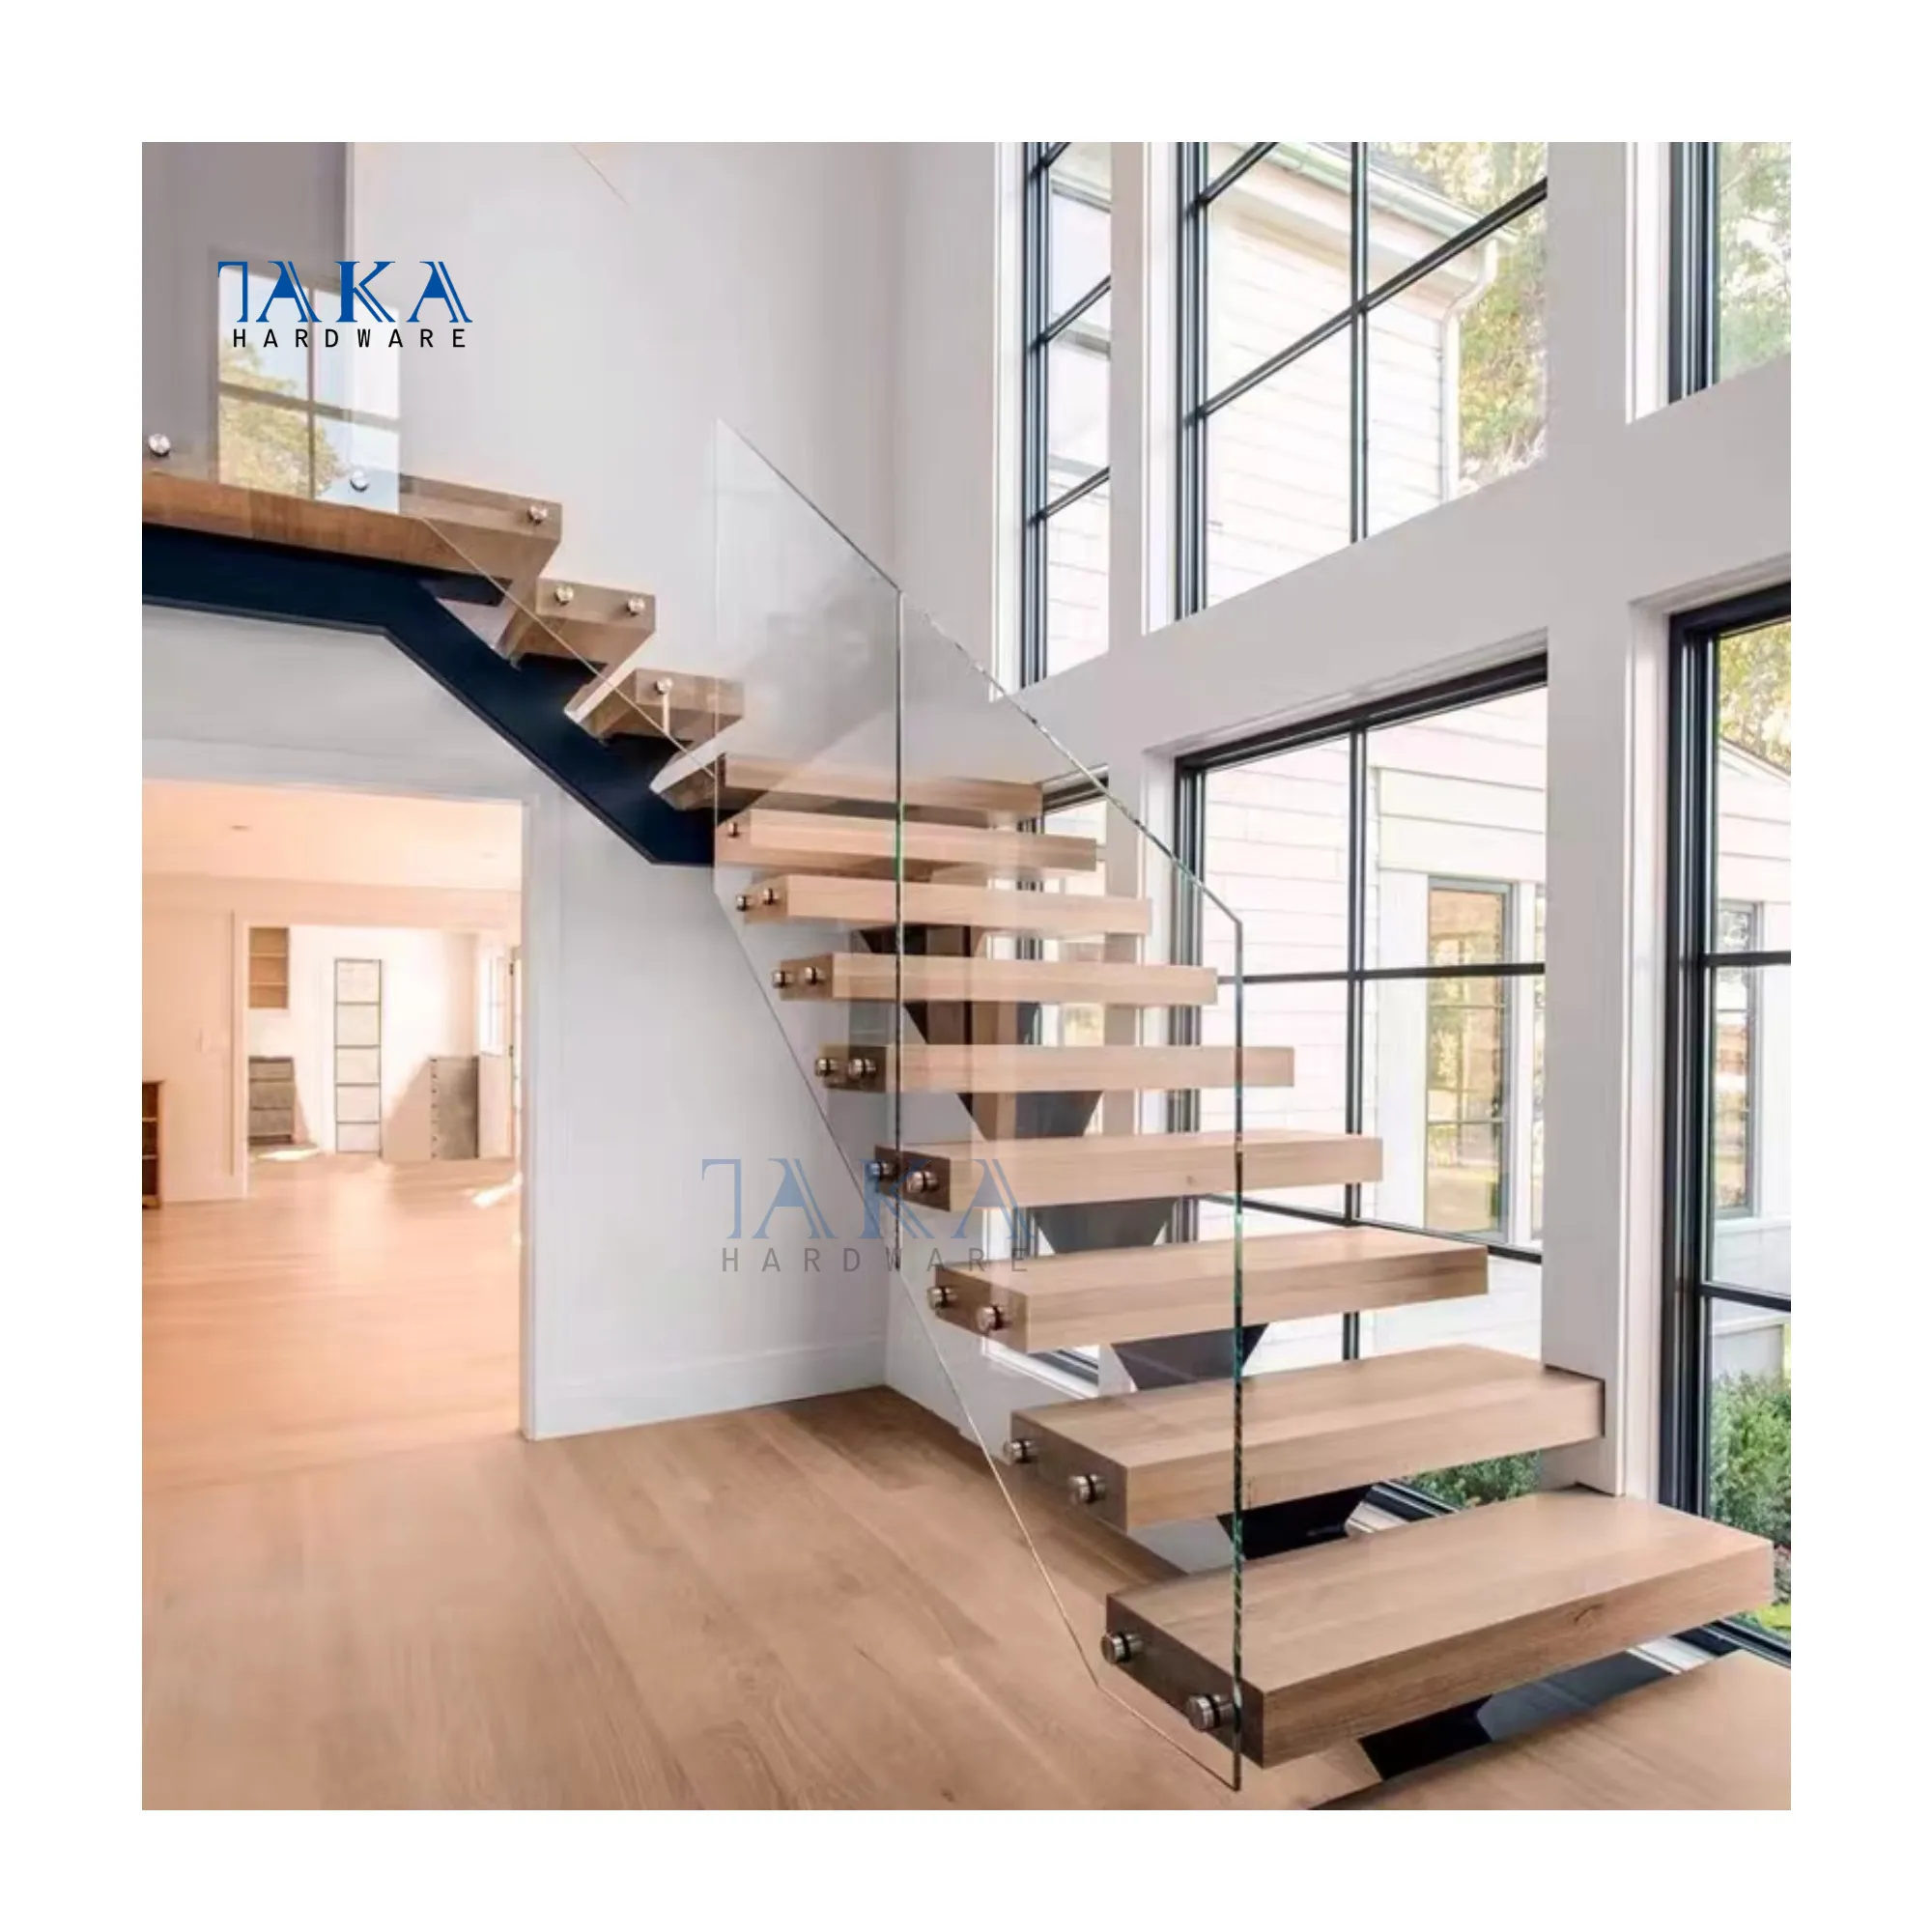 TAKA ev/otel merdiven açık/kapalı çelik merdiven metal düz merdiven korozyona dayanıklı merdiven